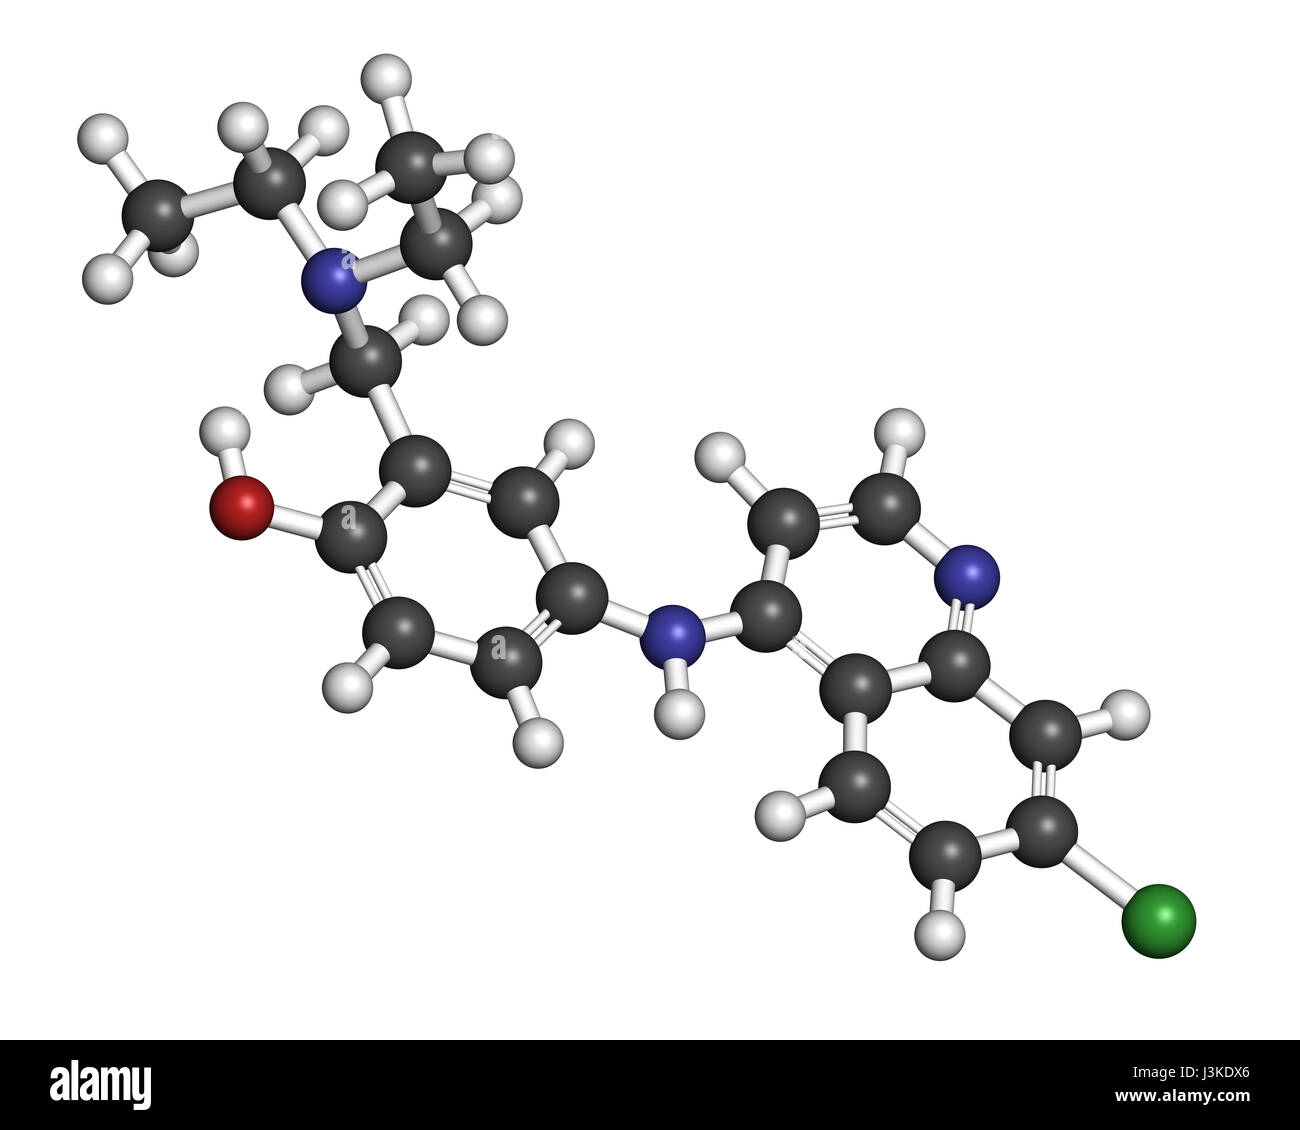 Amodiaquine Anti-Malaria-Medikamentenmolekül. Atome sind als Kugeln mit konventionellen Farbcodierung vertreten: Wasserstoff (weiß), Kohlenstoff (grau), Sauerstoff (rot Stockfoto